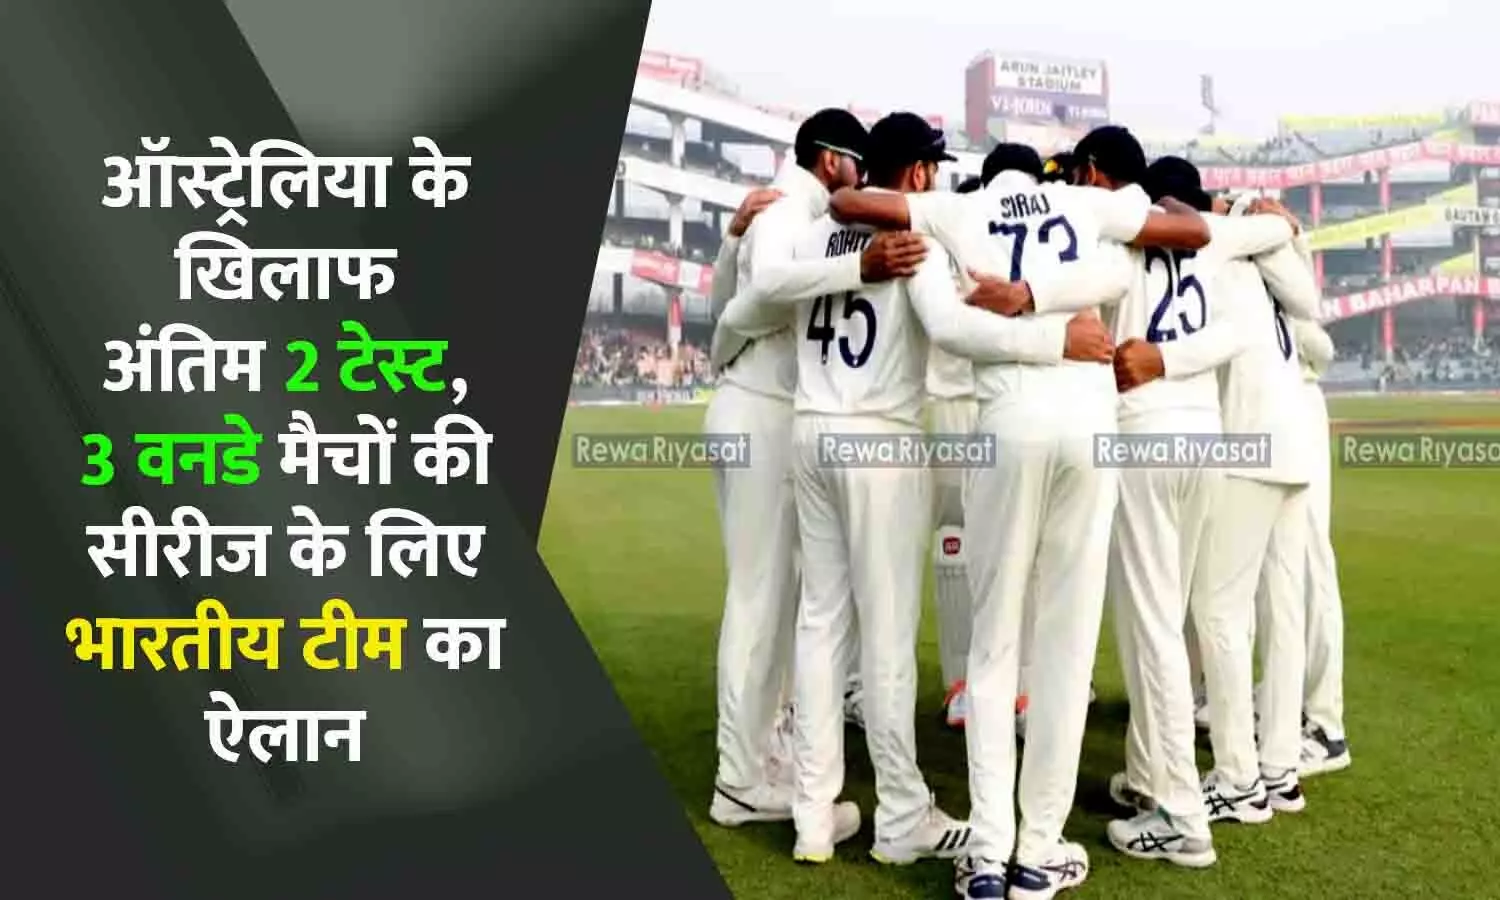 IND Vs AUS 2023: ऑस्ट्रेलिया के खिलाफ अंतिम दो टेस्ट और 3 वनडे मैचों के लिए भारतीय टीम का ऐलान, वनडे सीरीज में जडेजा की वापसी